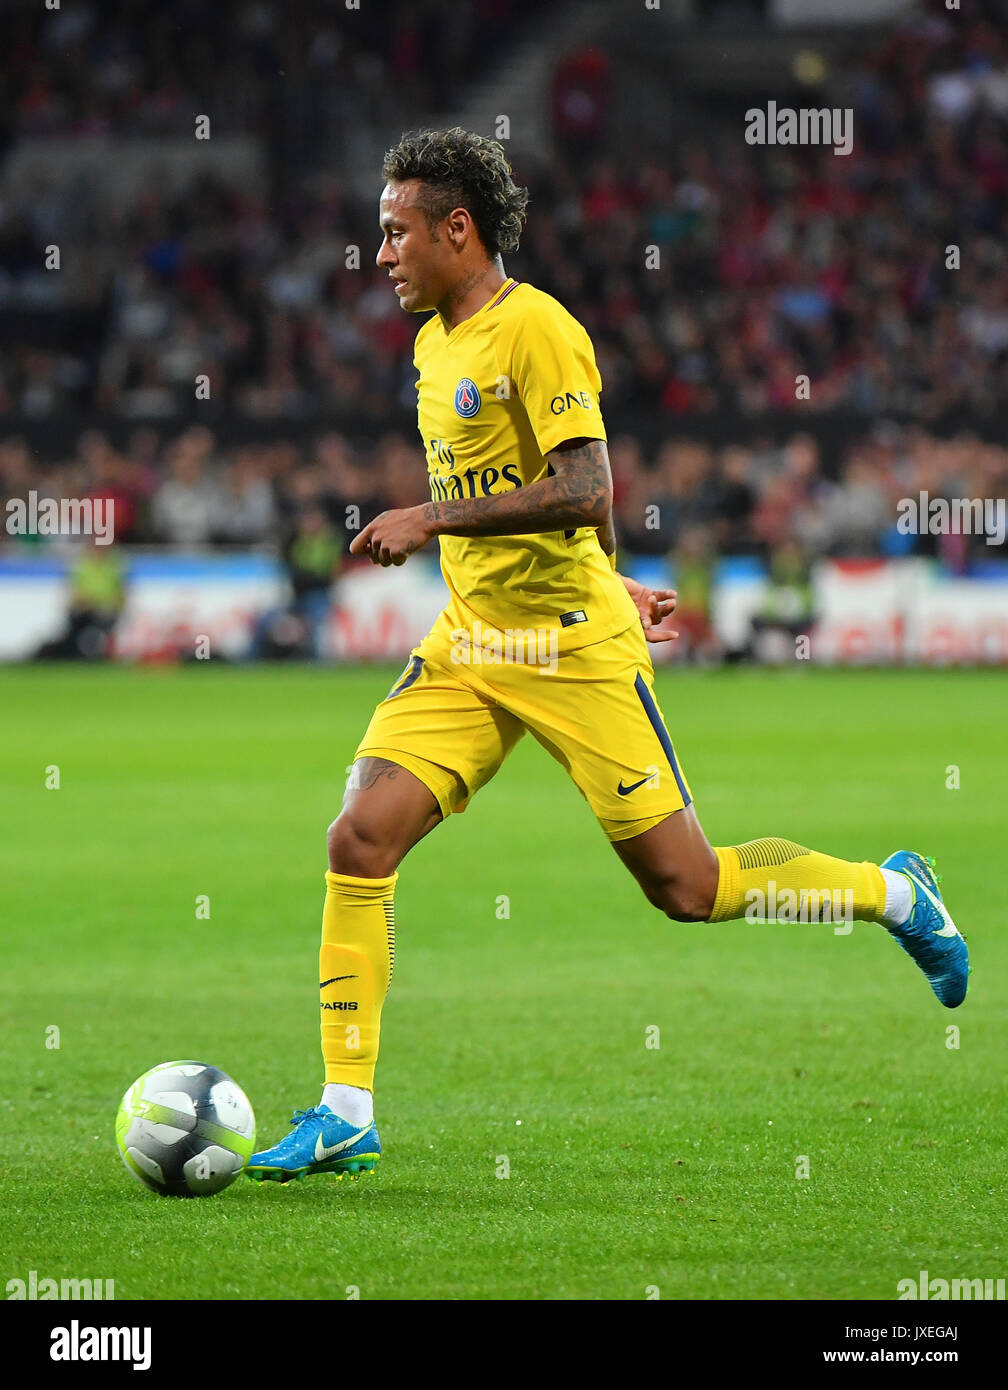 Neymar psg immagini e fotografie stock ad alta risoluzione - Pagina 2 -  Alamy